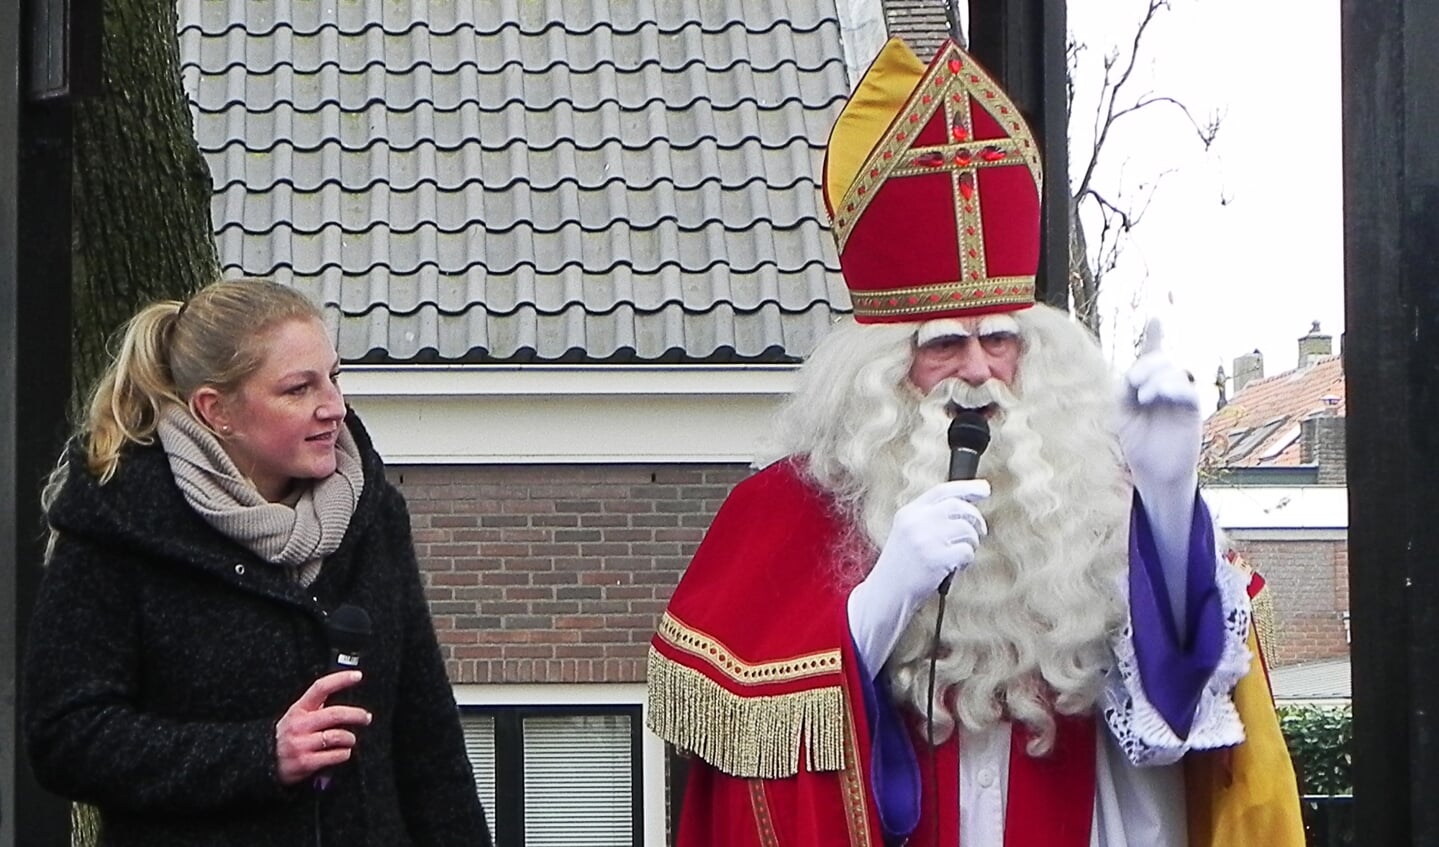 Sinterklaas steekt zijn vinger in de lucht wanneer hij iets belangrijks gaat zeggen.